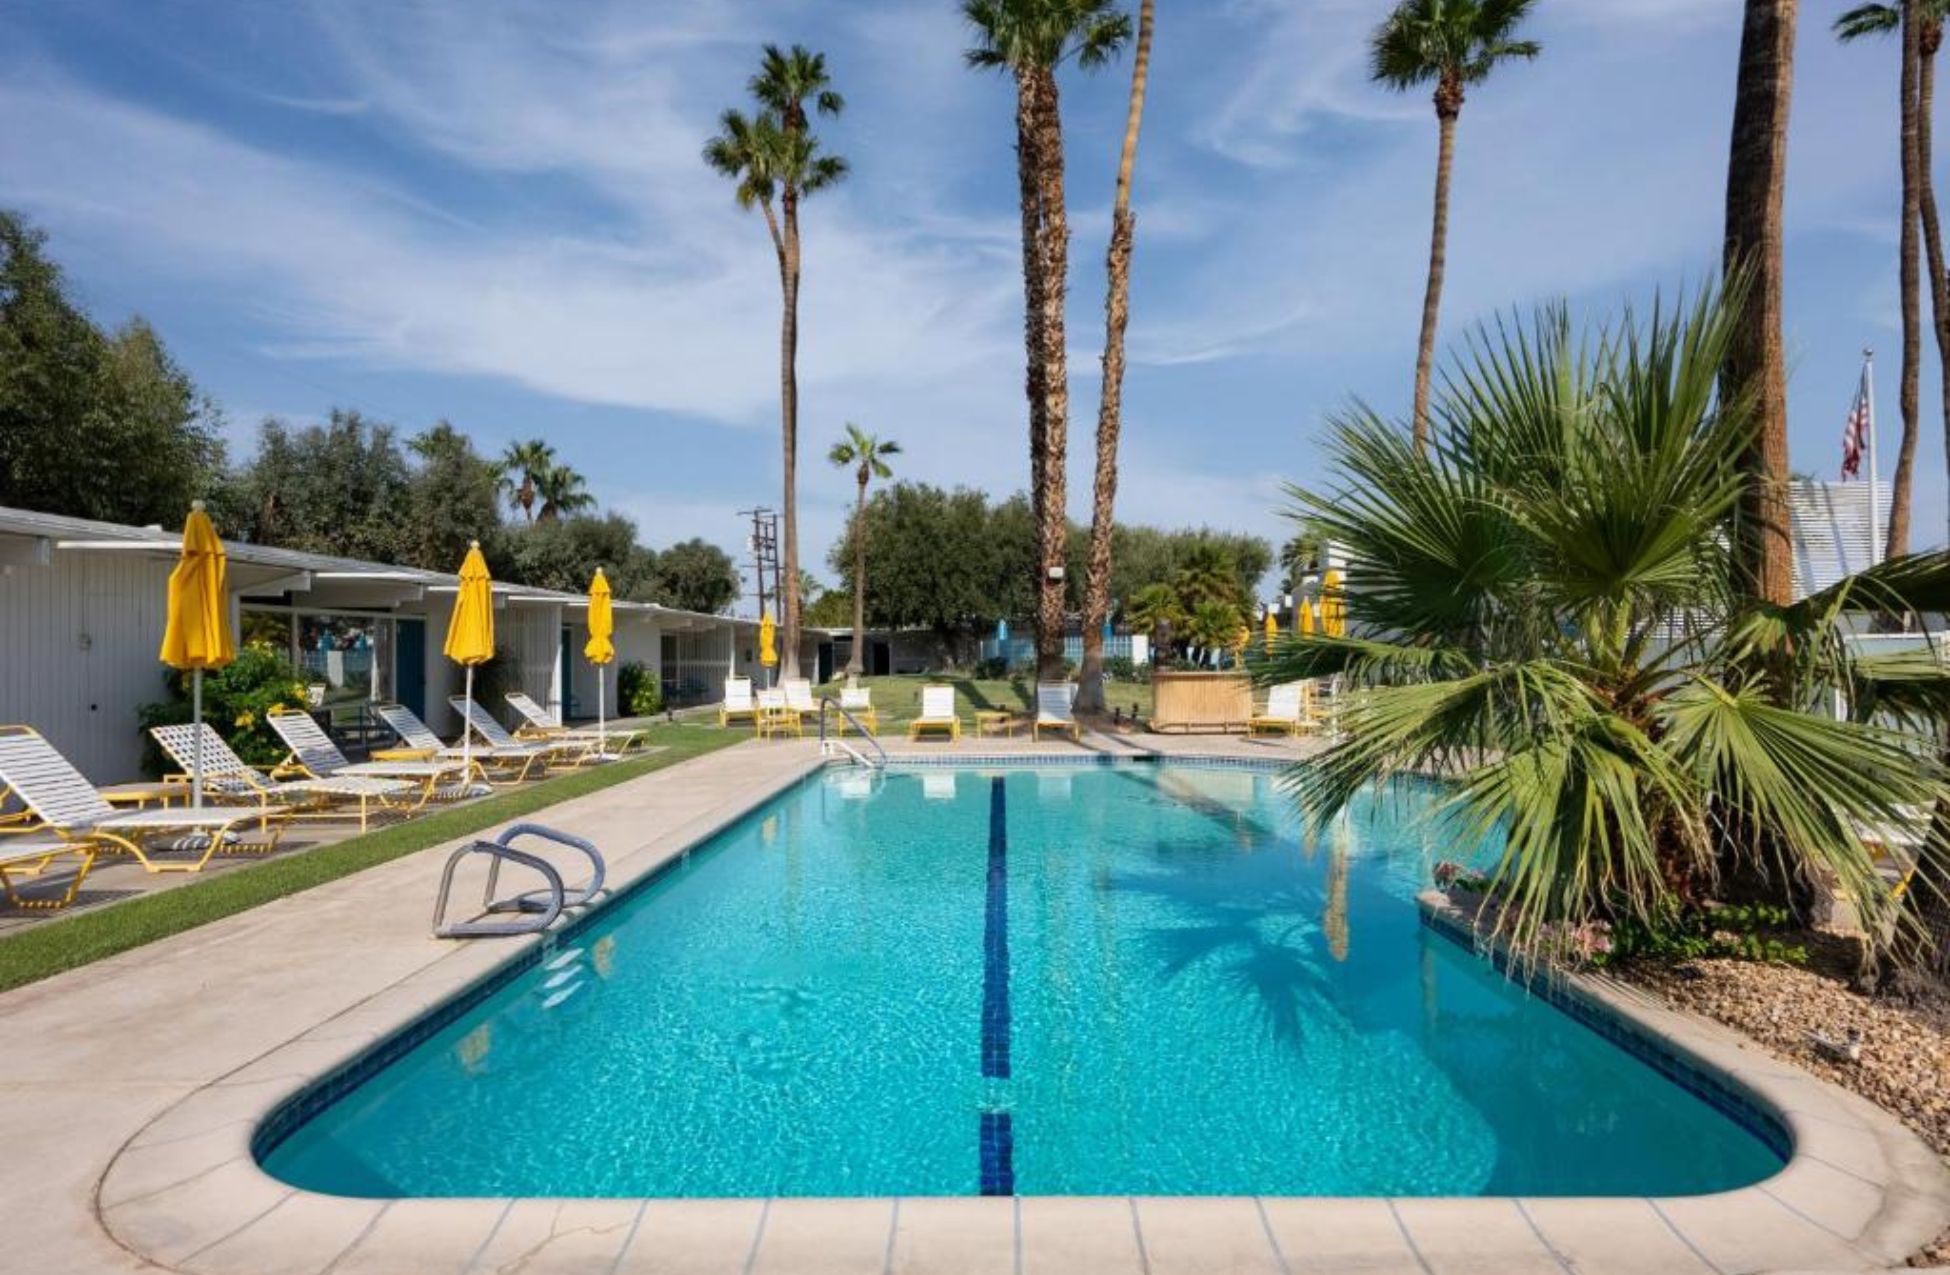 Monkey Tree Hotel - Best Hotels In Palm Springs